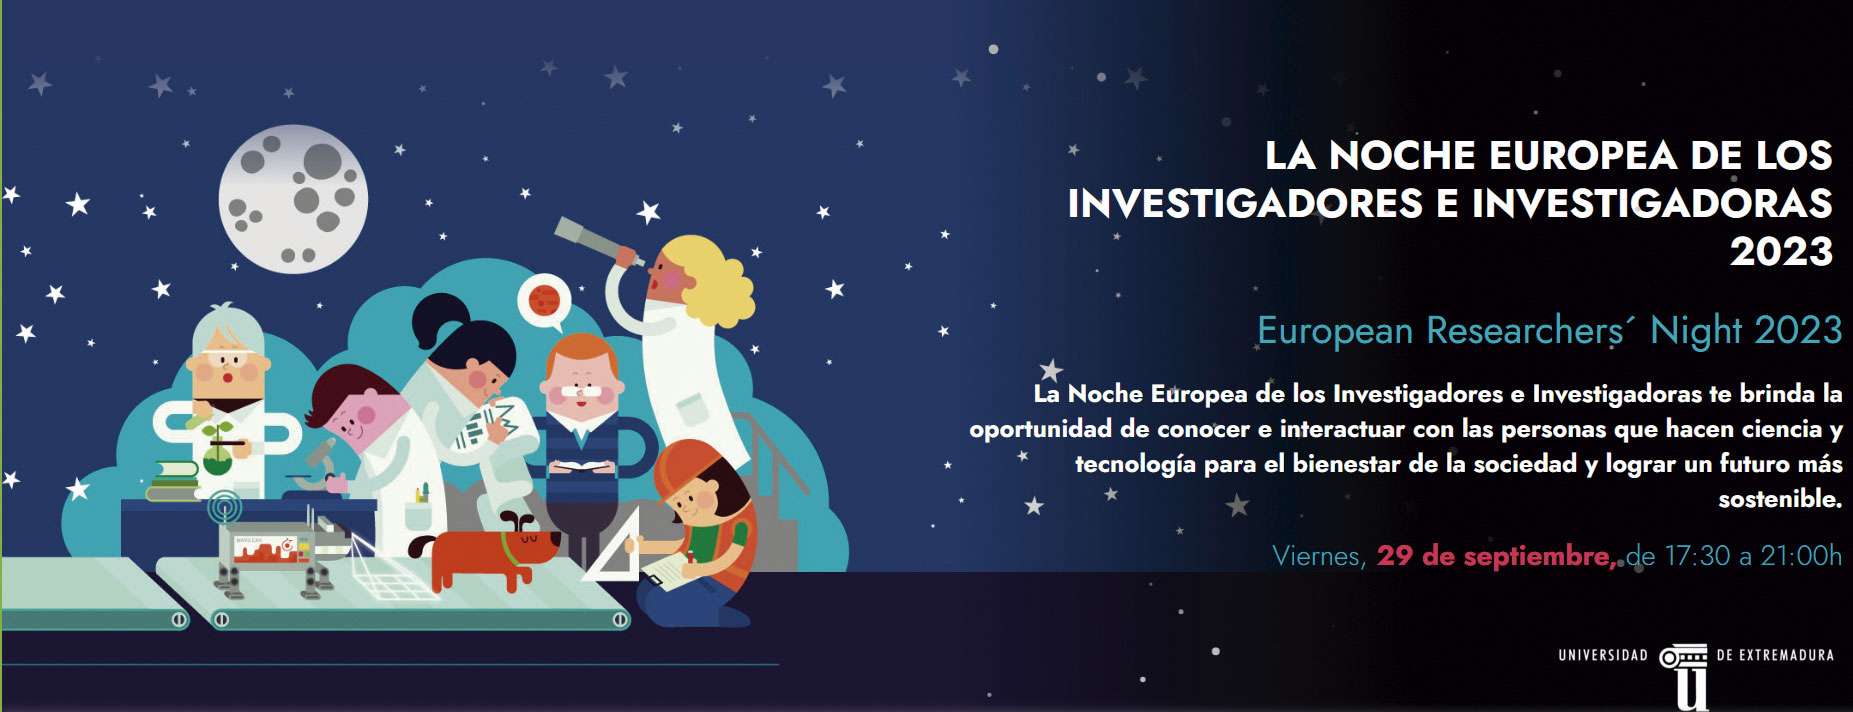 La Noche Europea de los Investigadores e Investigadoras de la Universidad de Extremadura se celebrará el 29 de septiembre